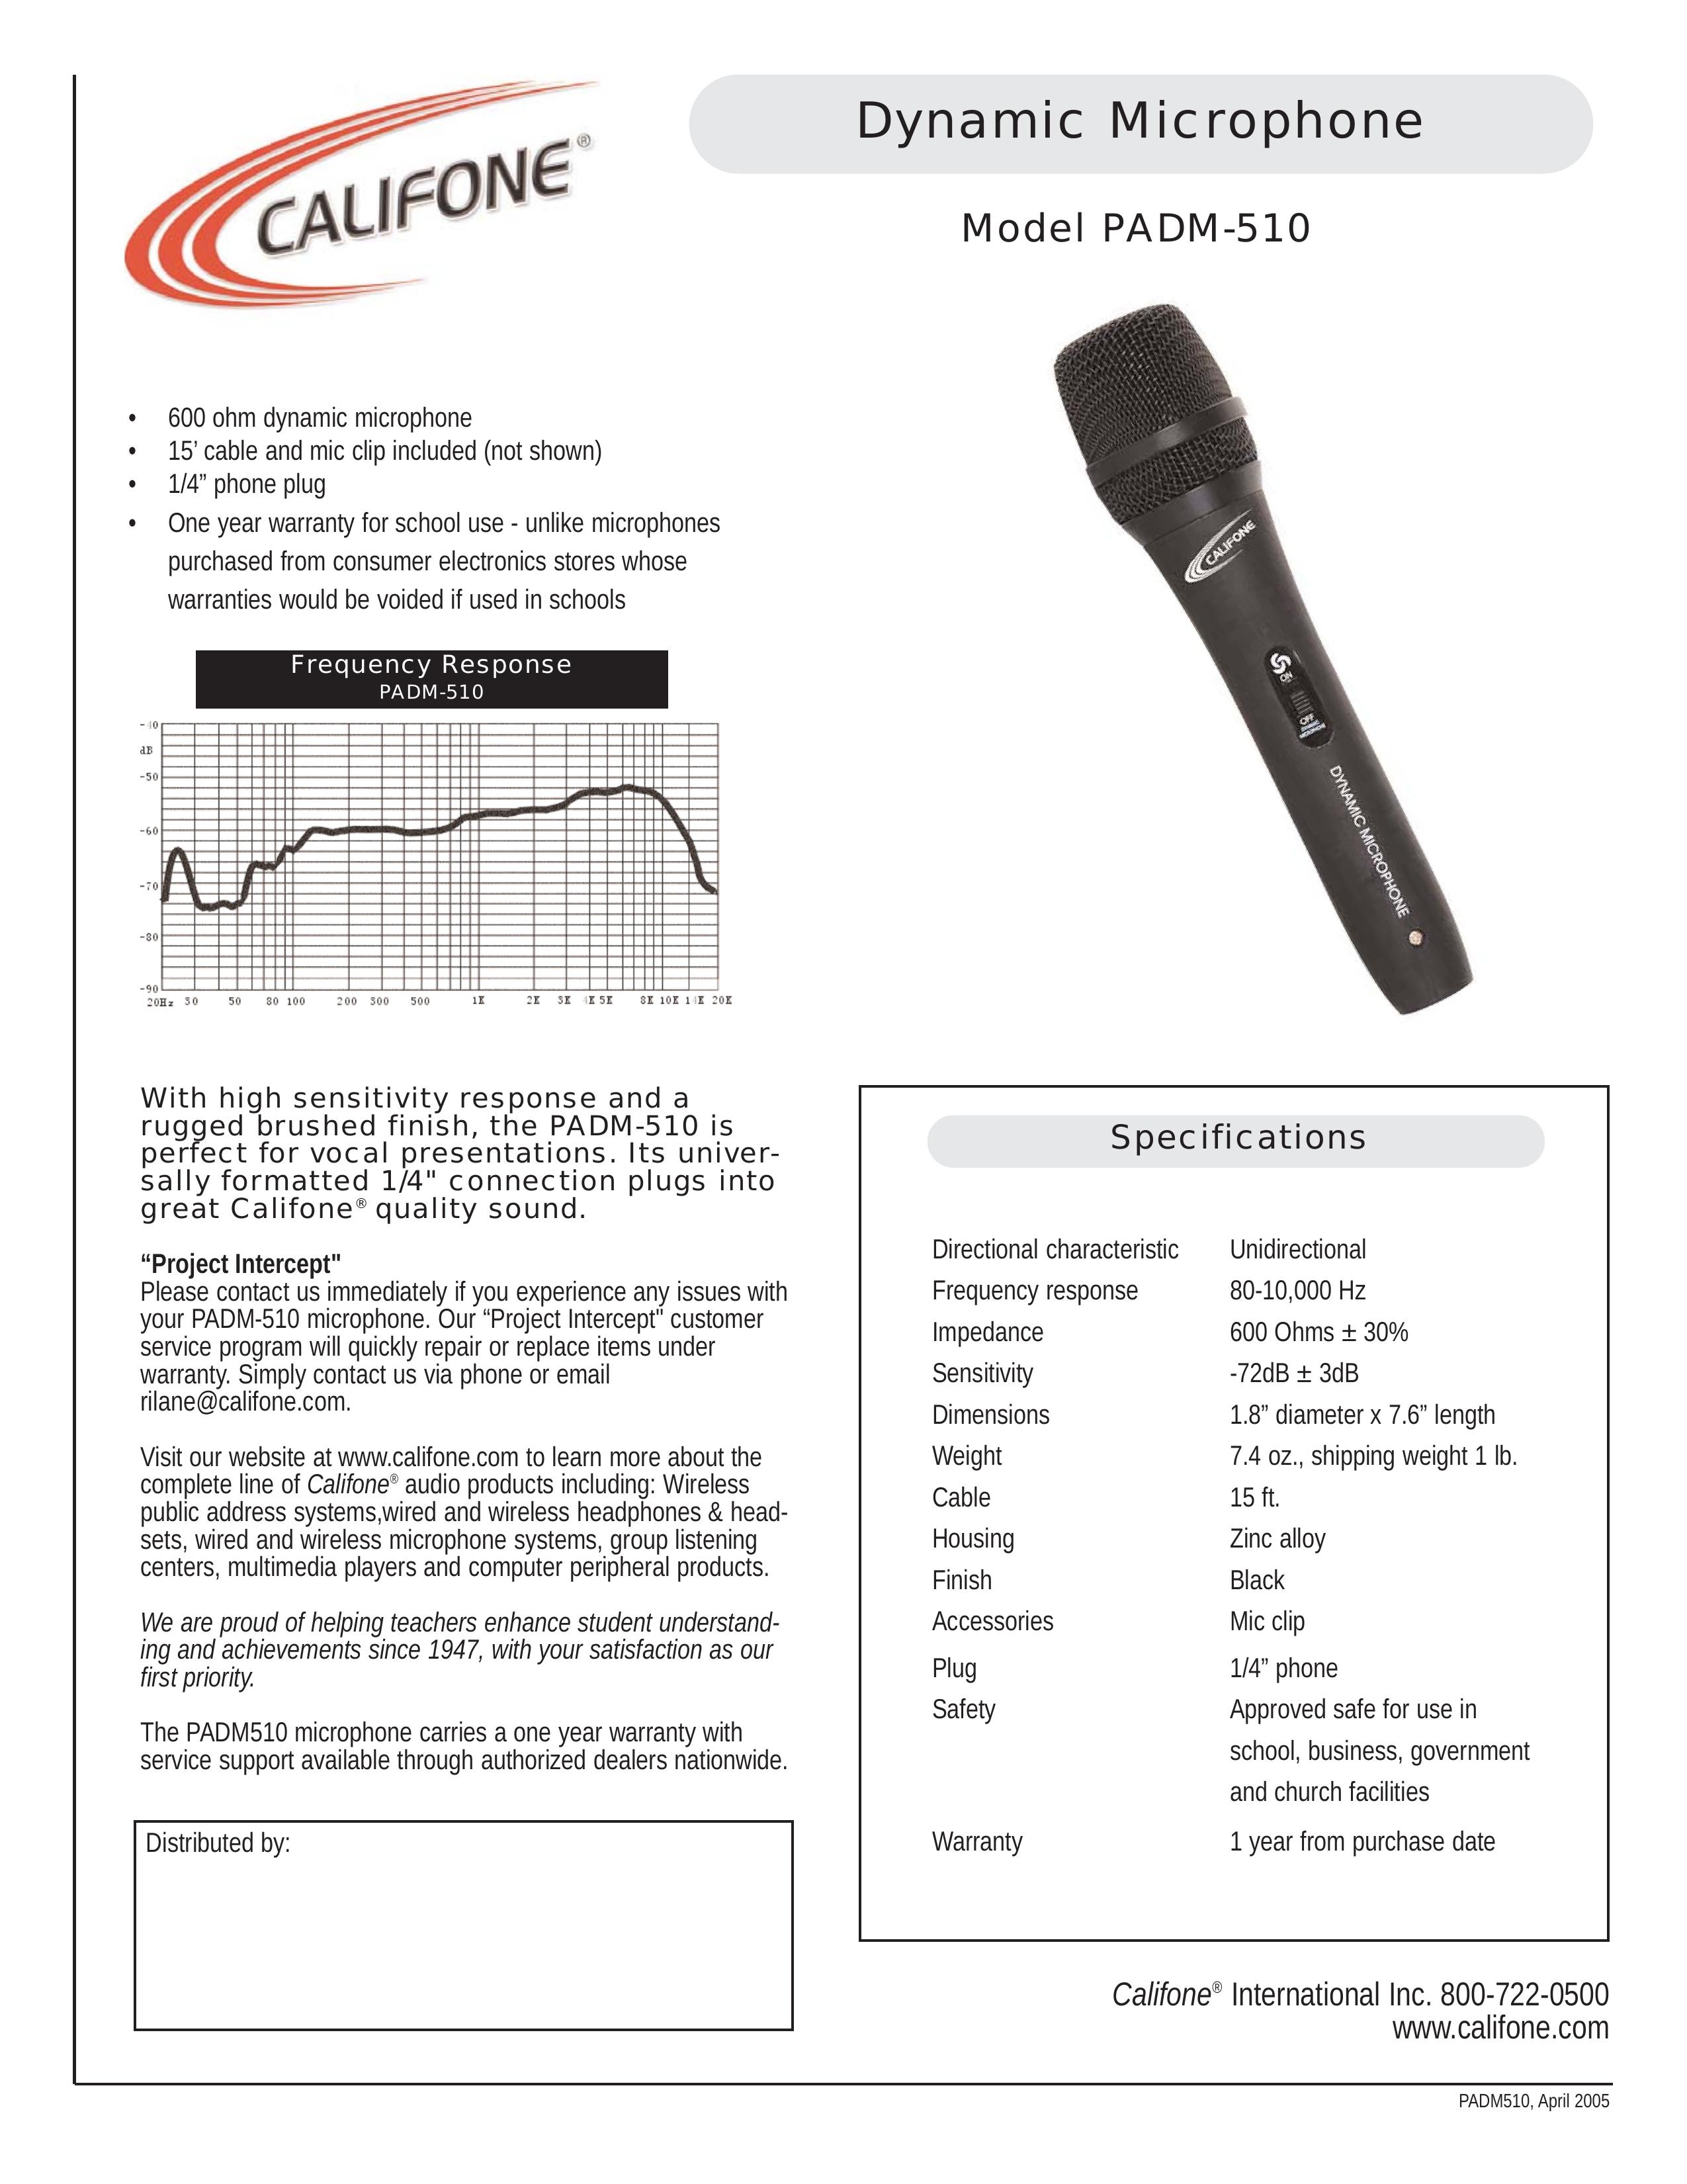 Califone PADM 510 Microphone User Manual